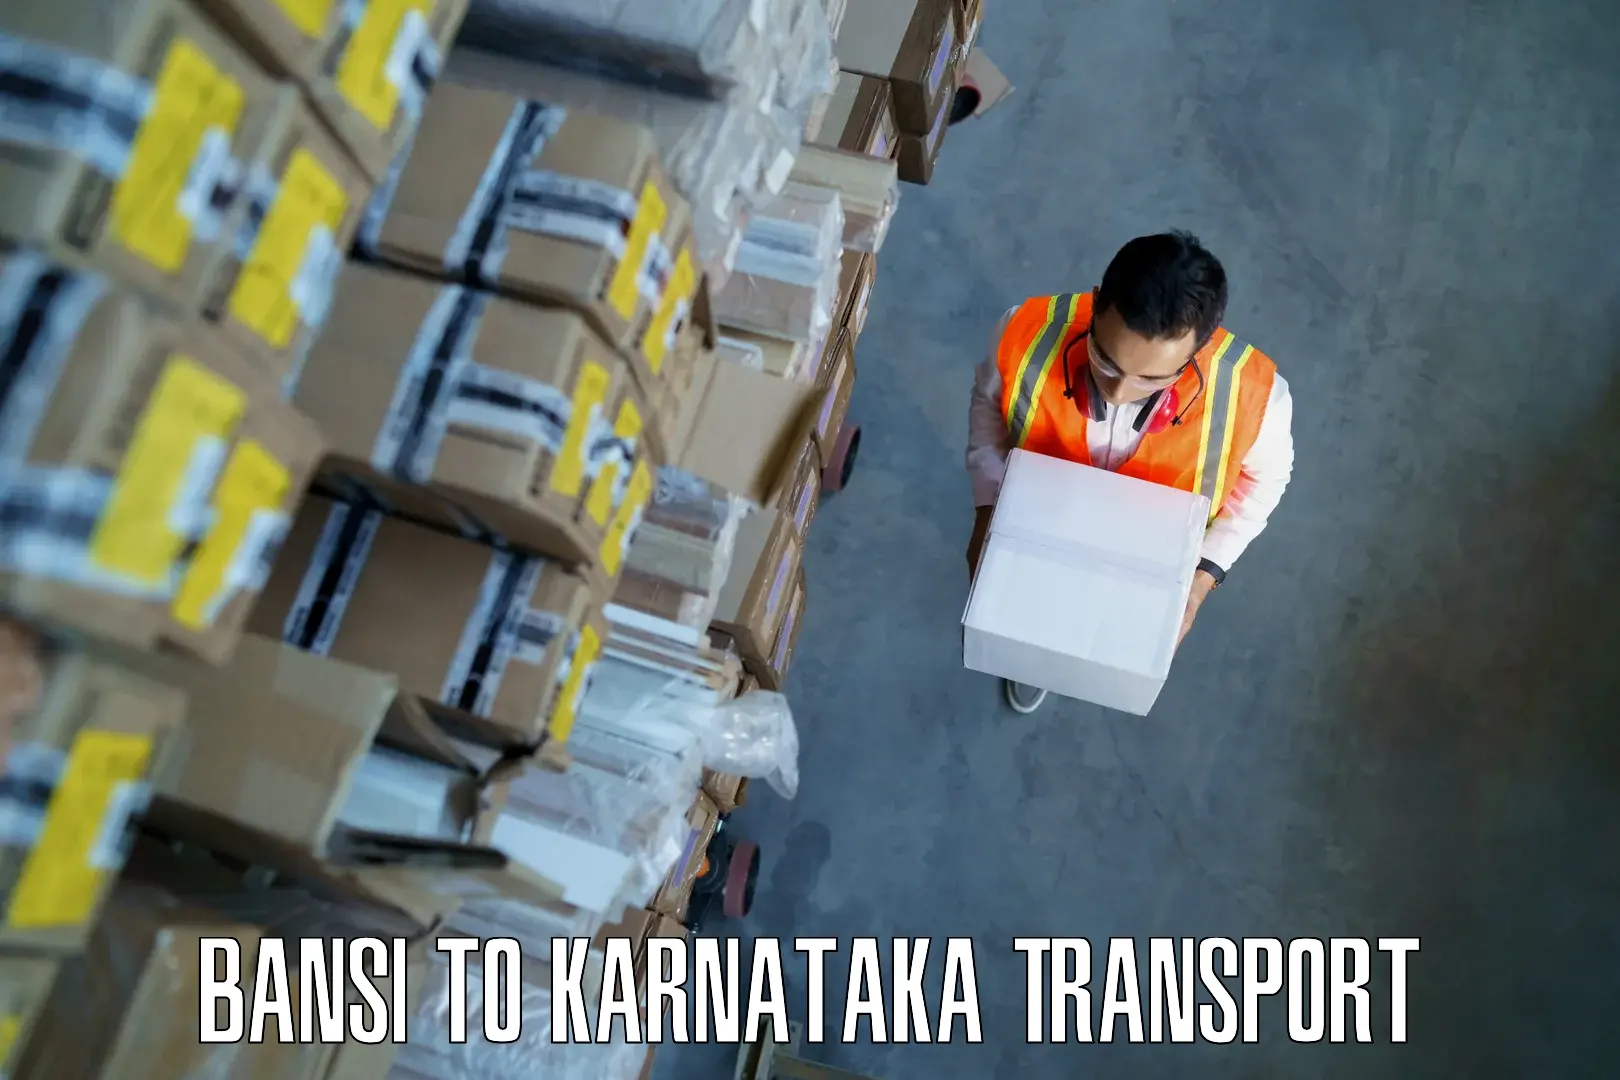 Daily transport service Bansi to Karnataka